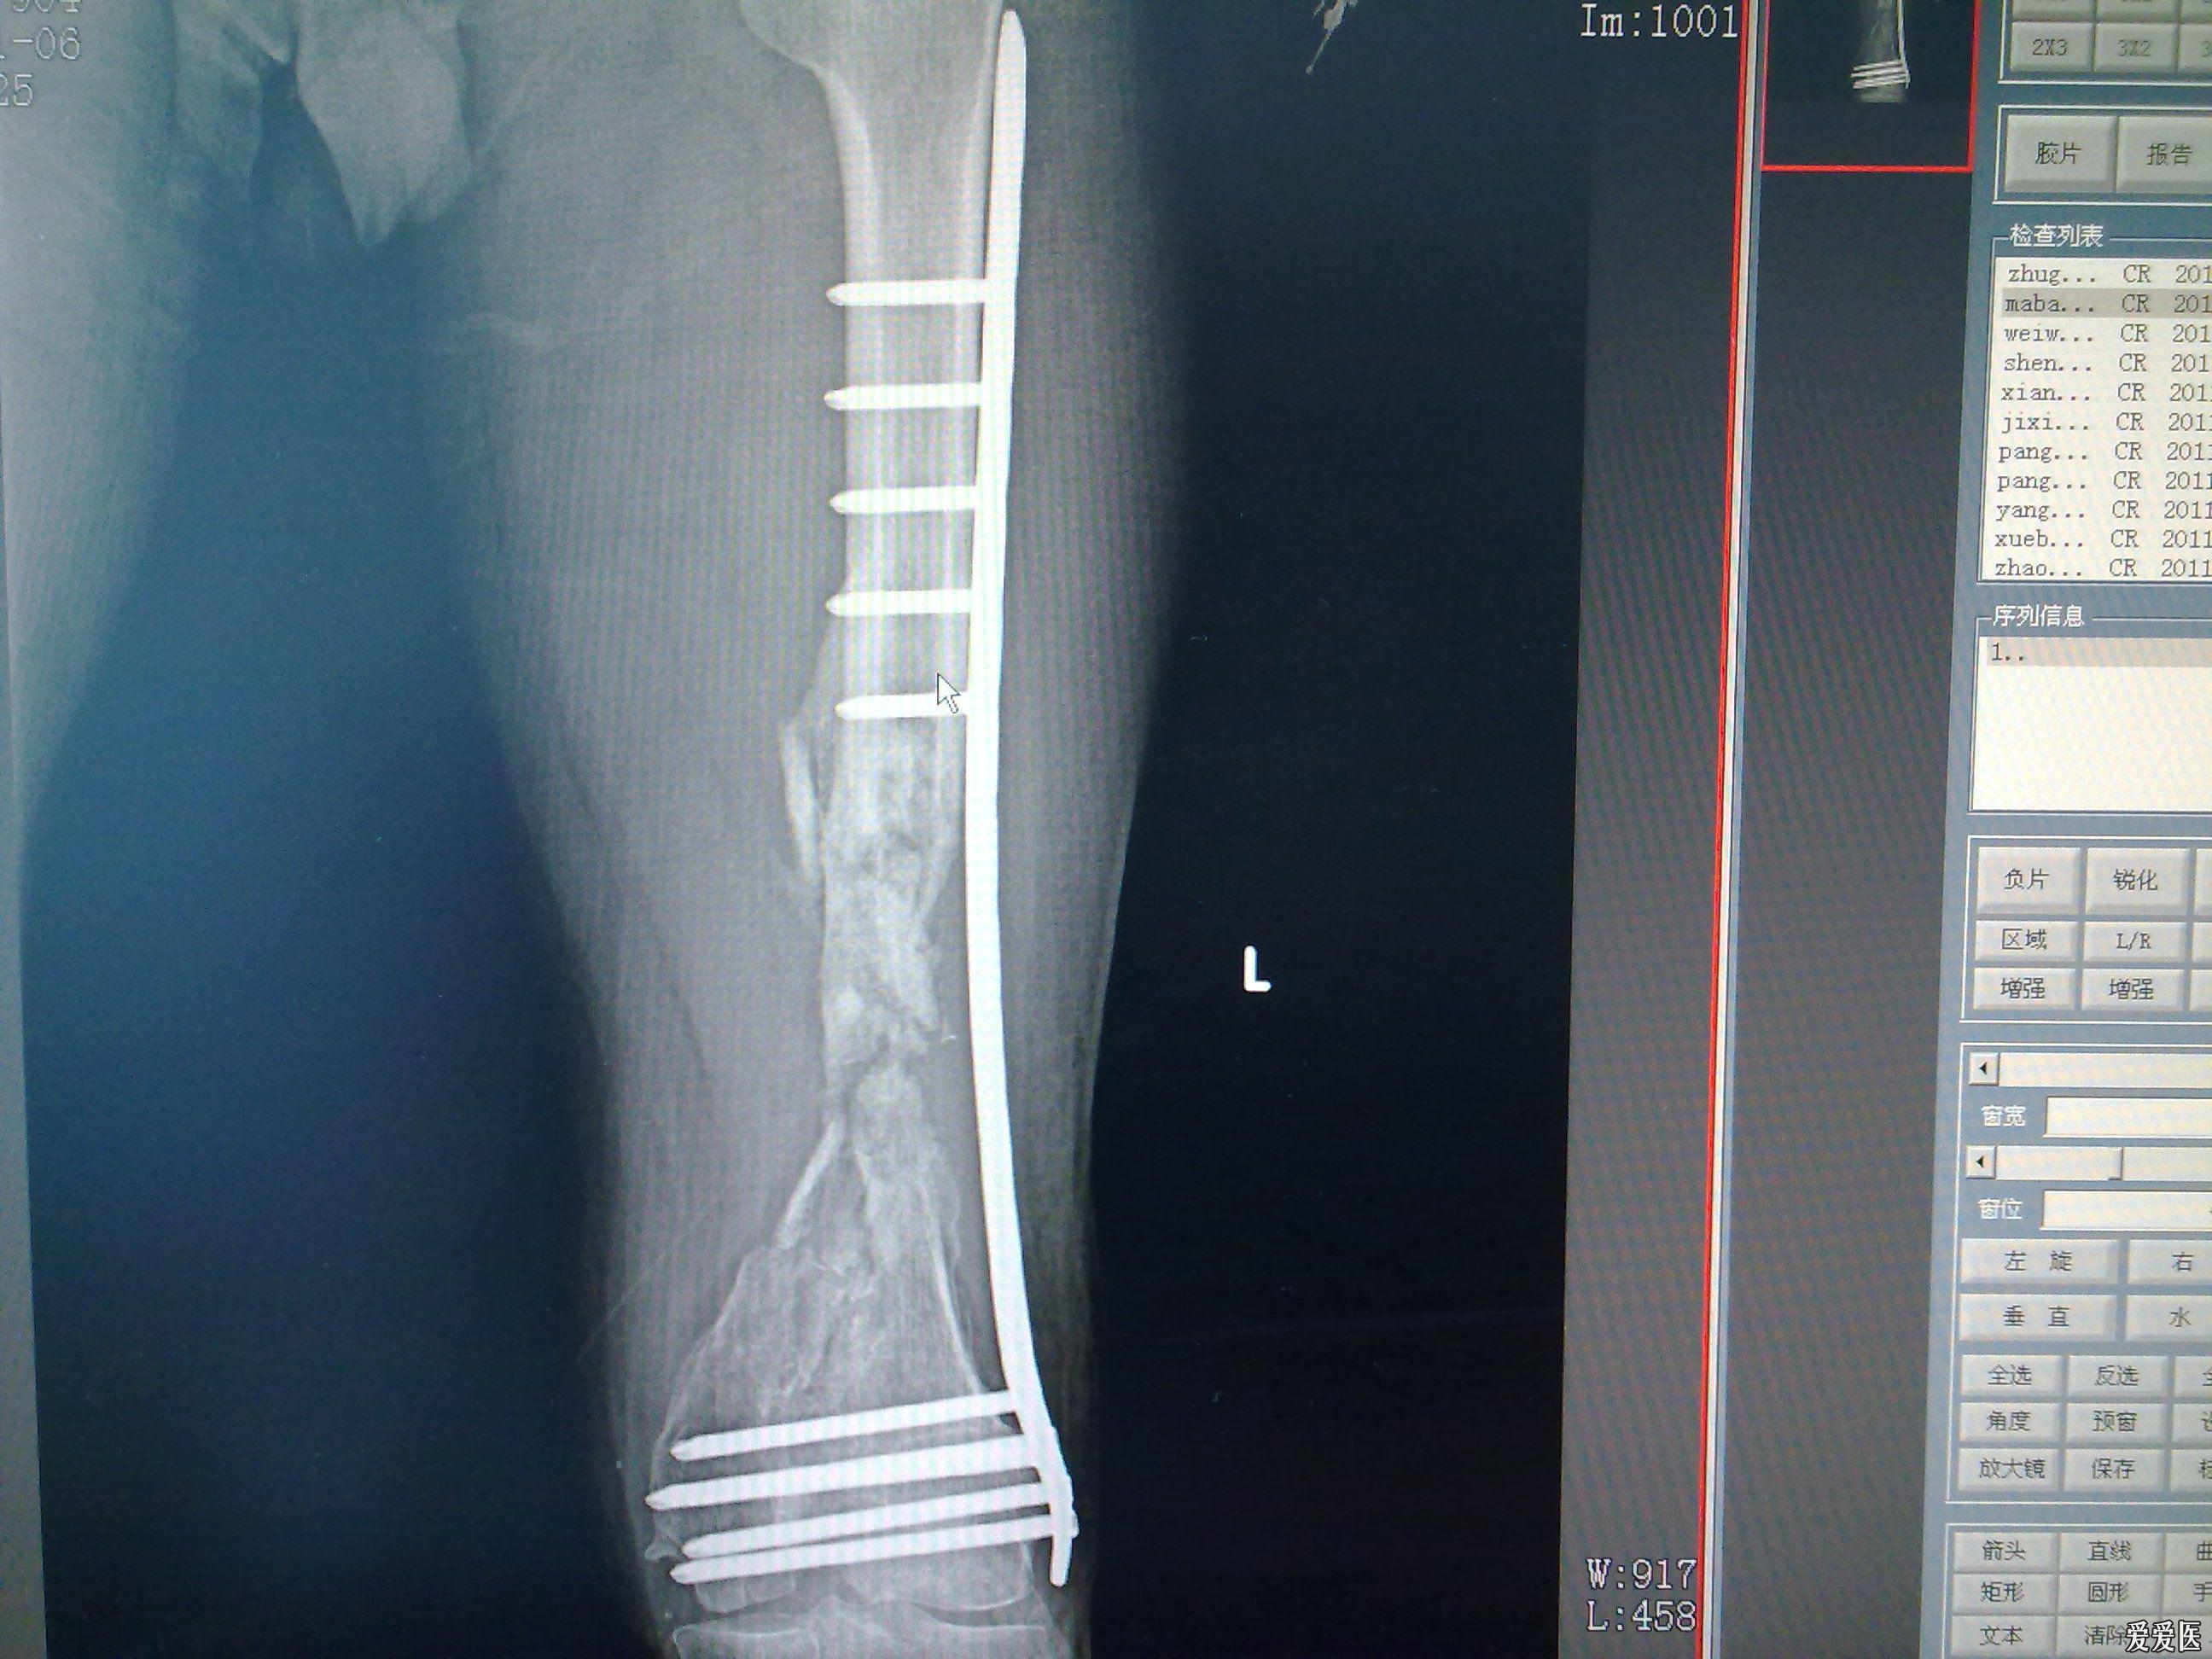 股骨粉碎性骨折钢板固定六月后愈合不佳